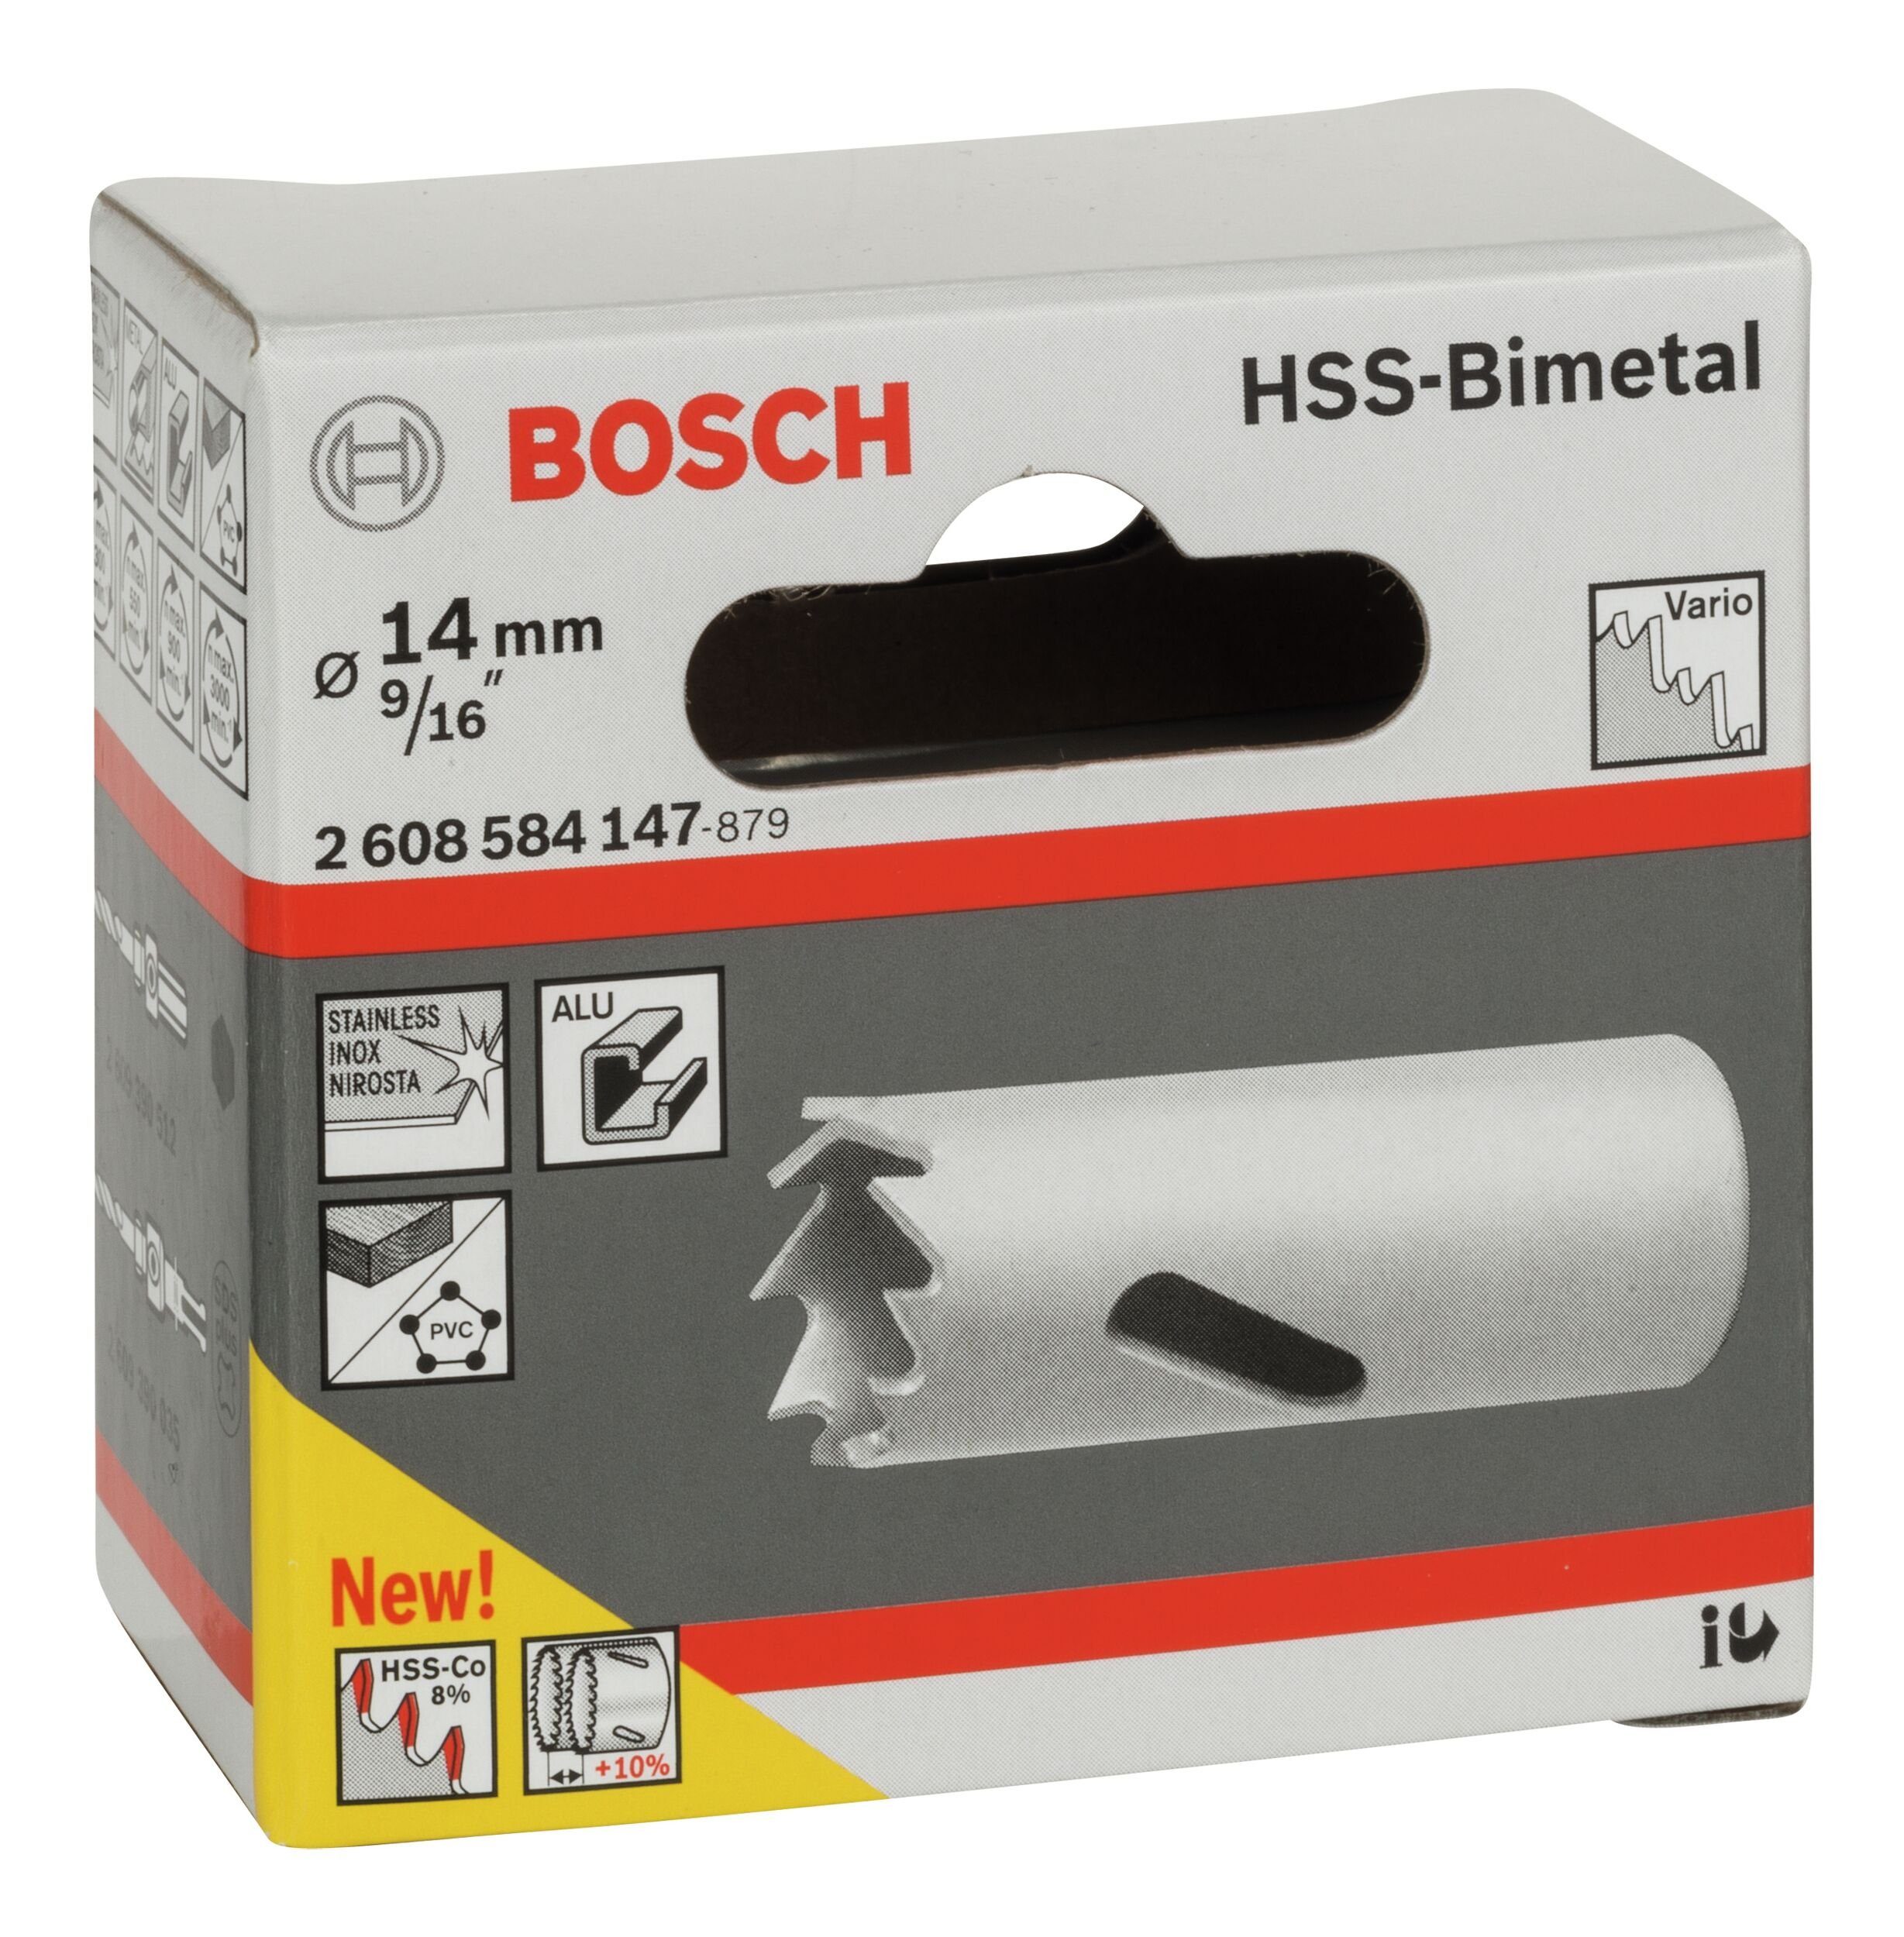 BOSCH Lochsäge, Ø mm, 14 / für - Standardadapter HSS-Bimetall 9/16"